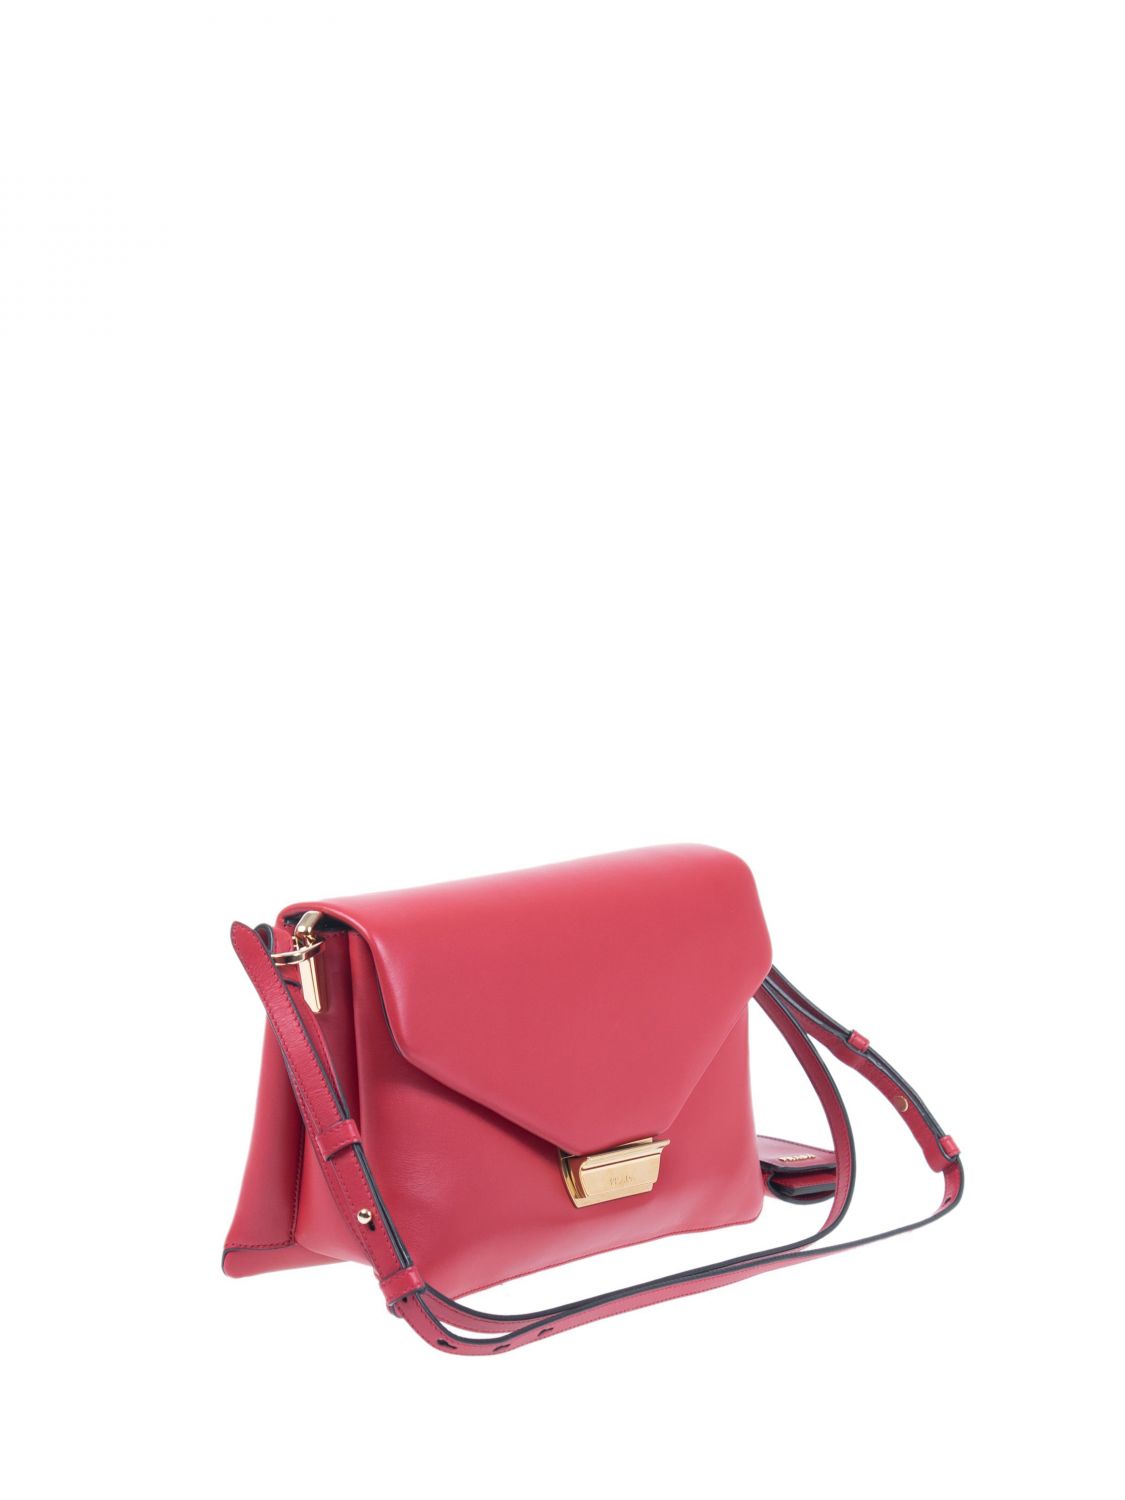 PRADA: bag in leather with shoulder strap - Red | Prada shoulder bag ...